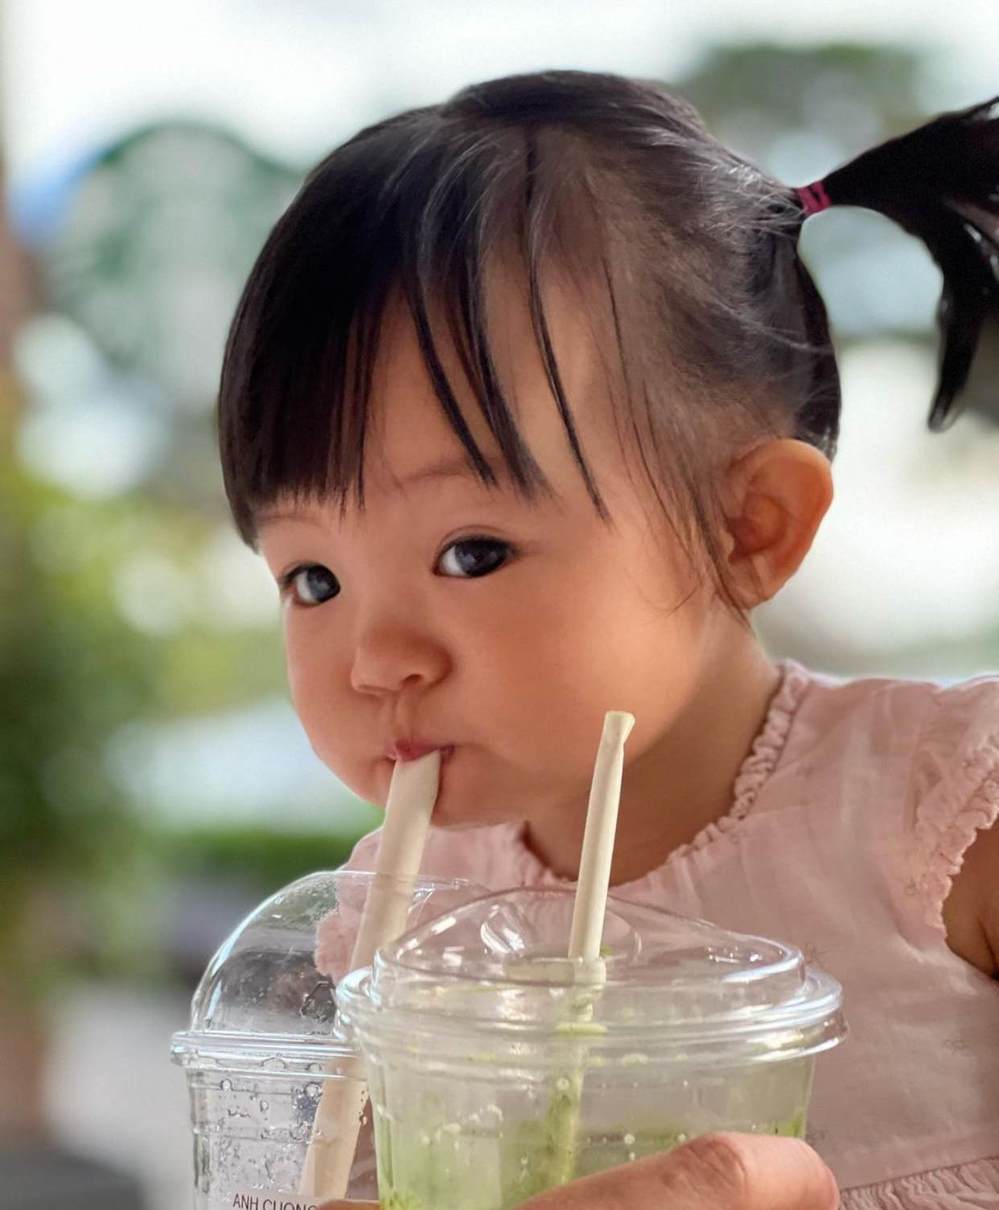  
Vì cố uống nước bằng chiếc ống hút cỡ lớn nên Suchin càng thêm "bồi đắp" độ phúng phính cho chiếc má "thương hiệu". (Ảnh: Instagram suchin_baby)